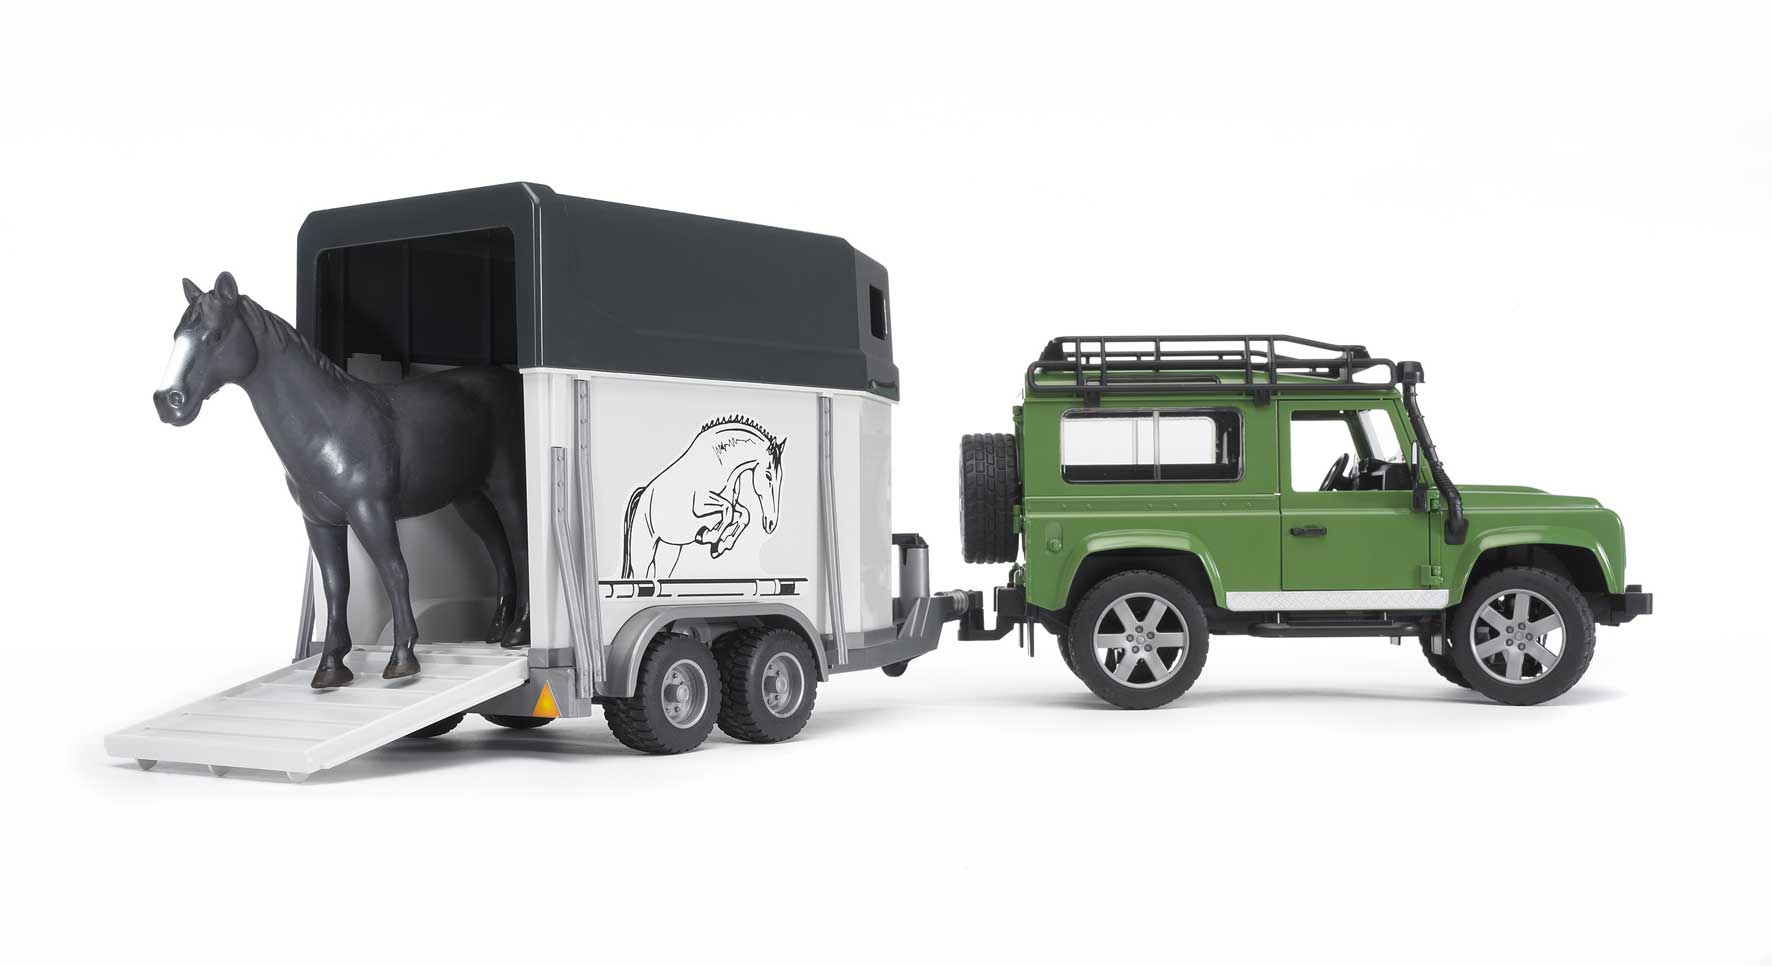 Merchandising Bruder: 2592 - Land Rover Defender Station Wagon C/Rim.Trasp. C/1 Cavallo NUOVO SIGILLATO, EDIZIONE DEL 20/04/2016 SUBITO DISPONIBILE